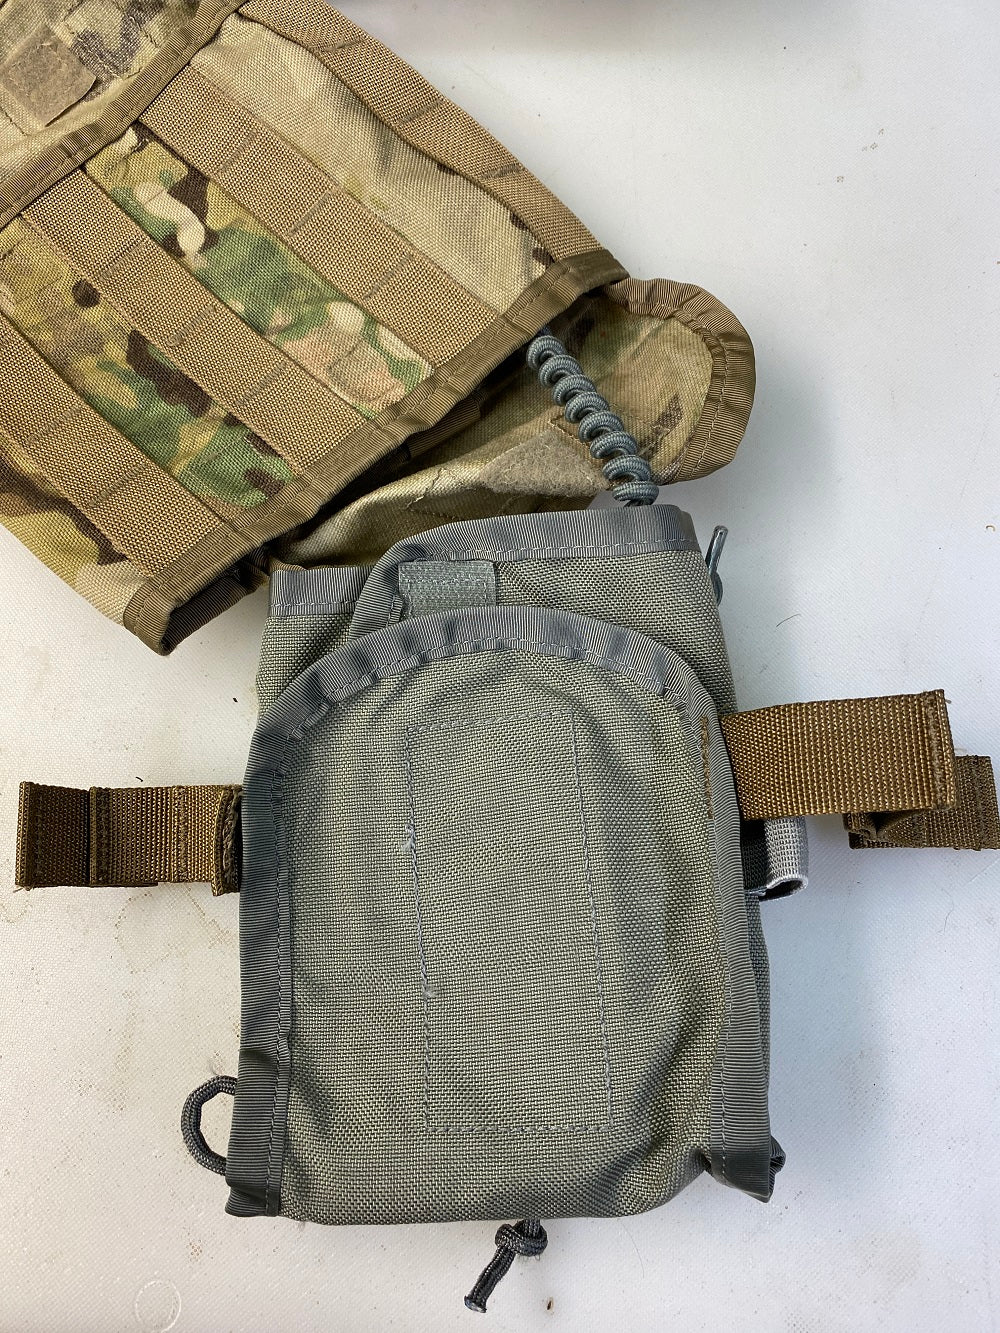 first aid military leg packs